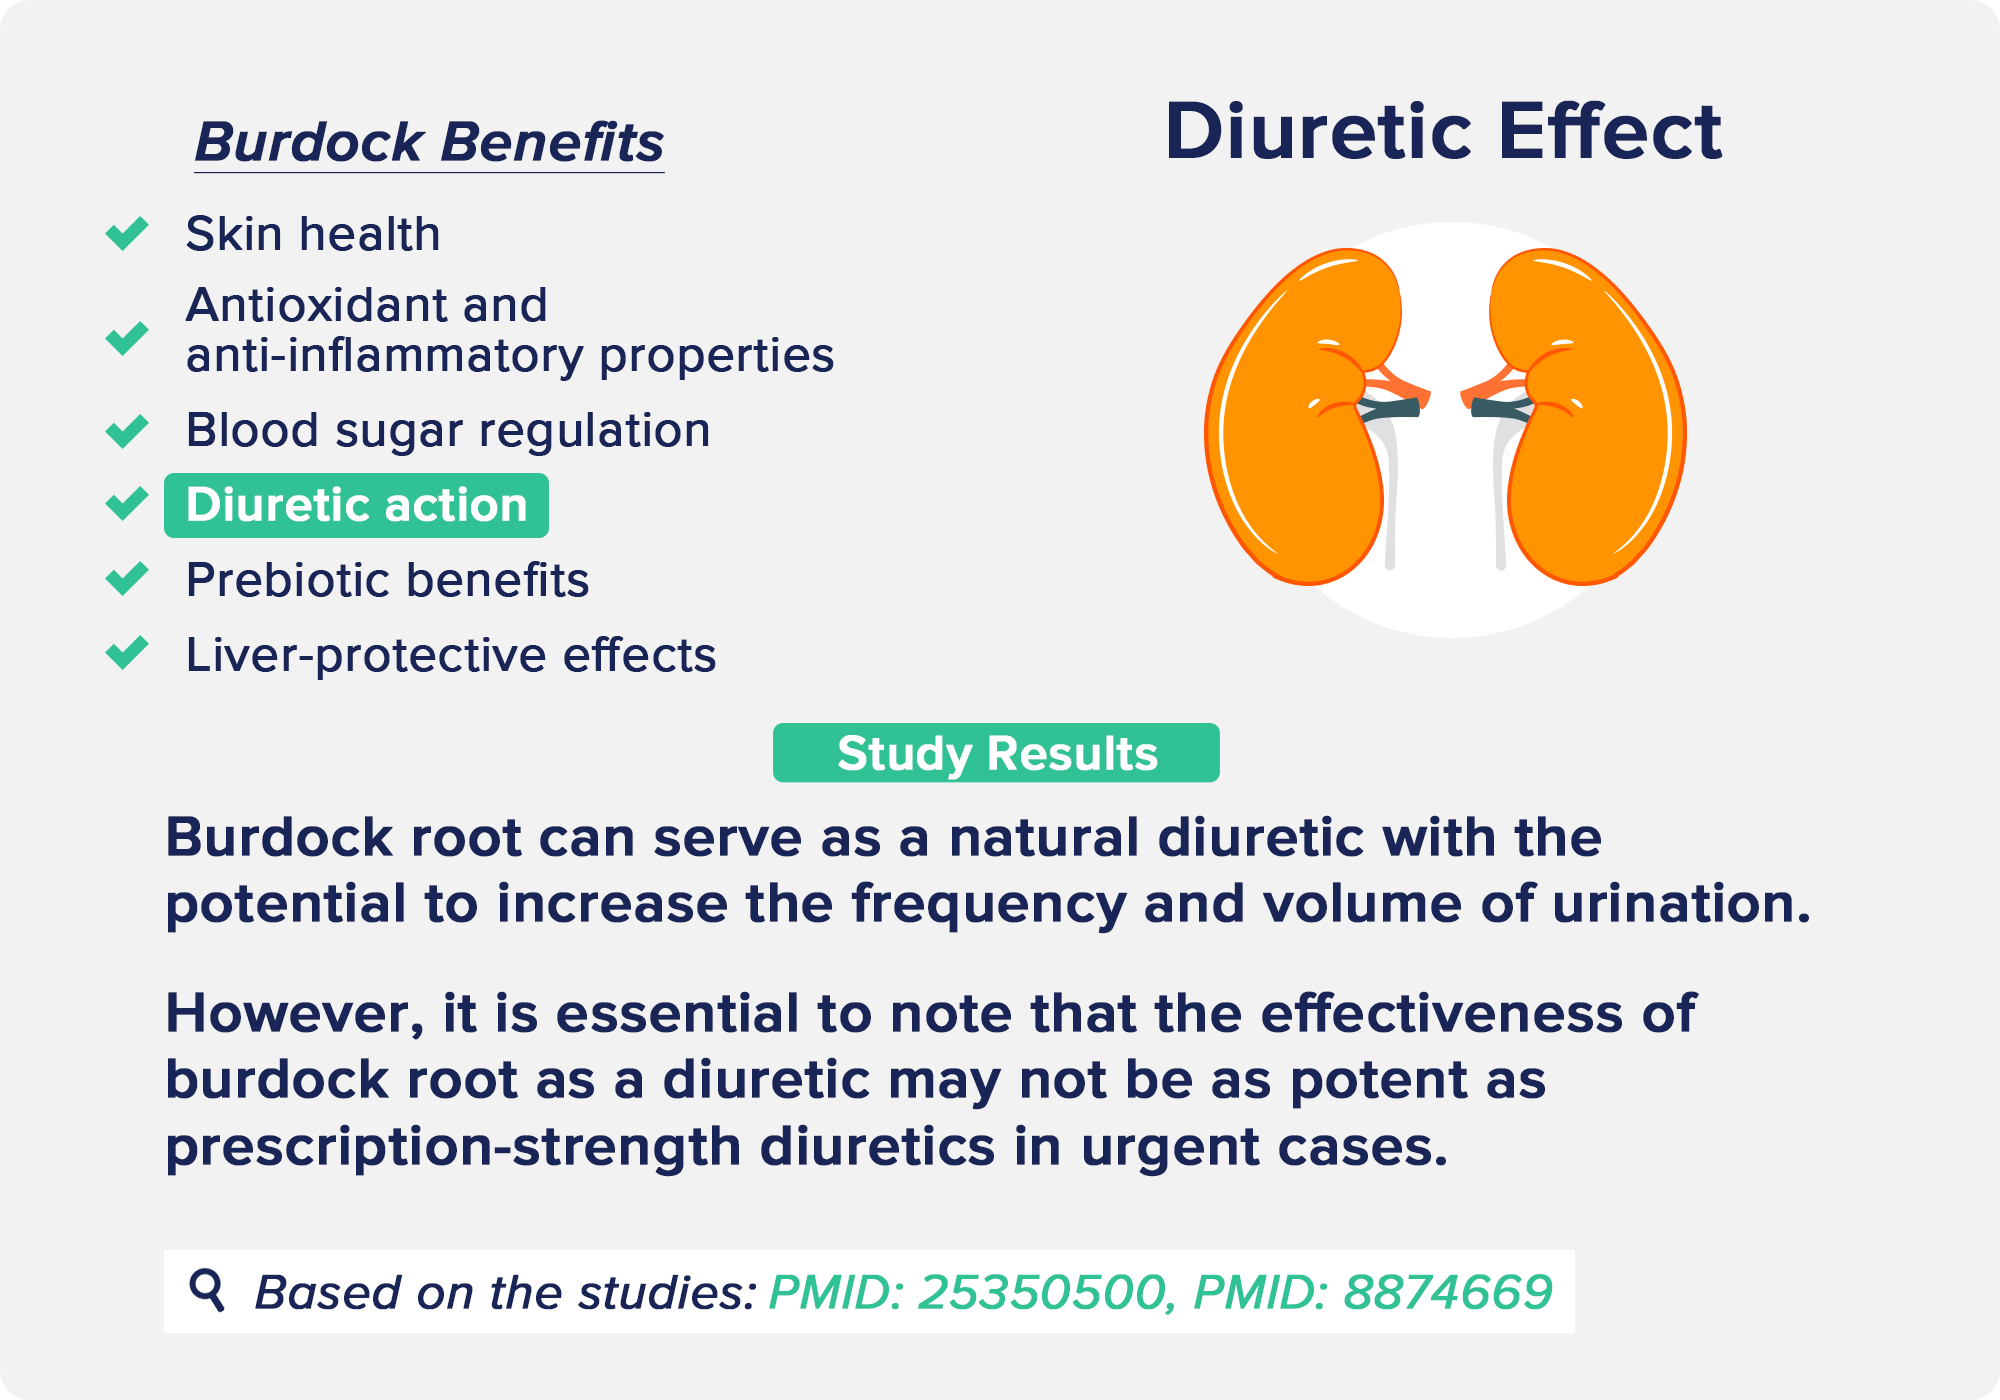 burdock benefits: Diuretic Effect